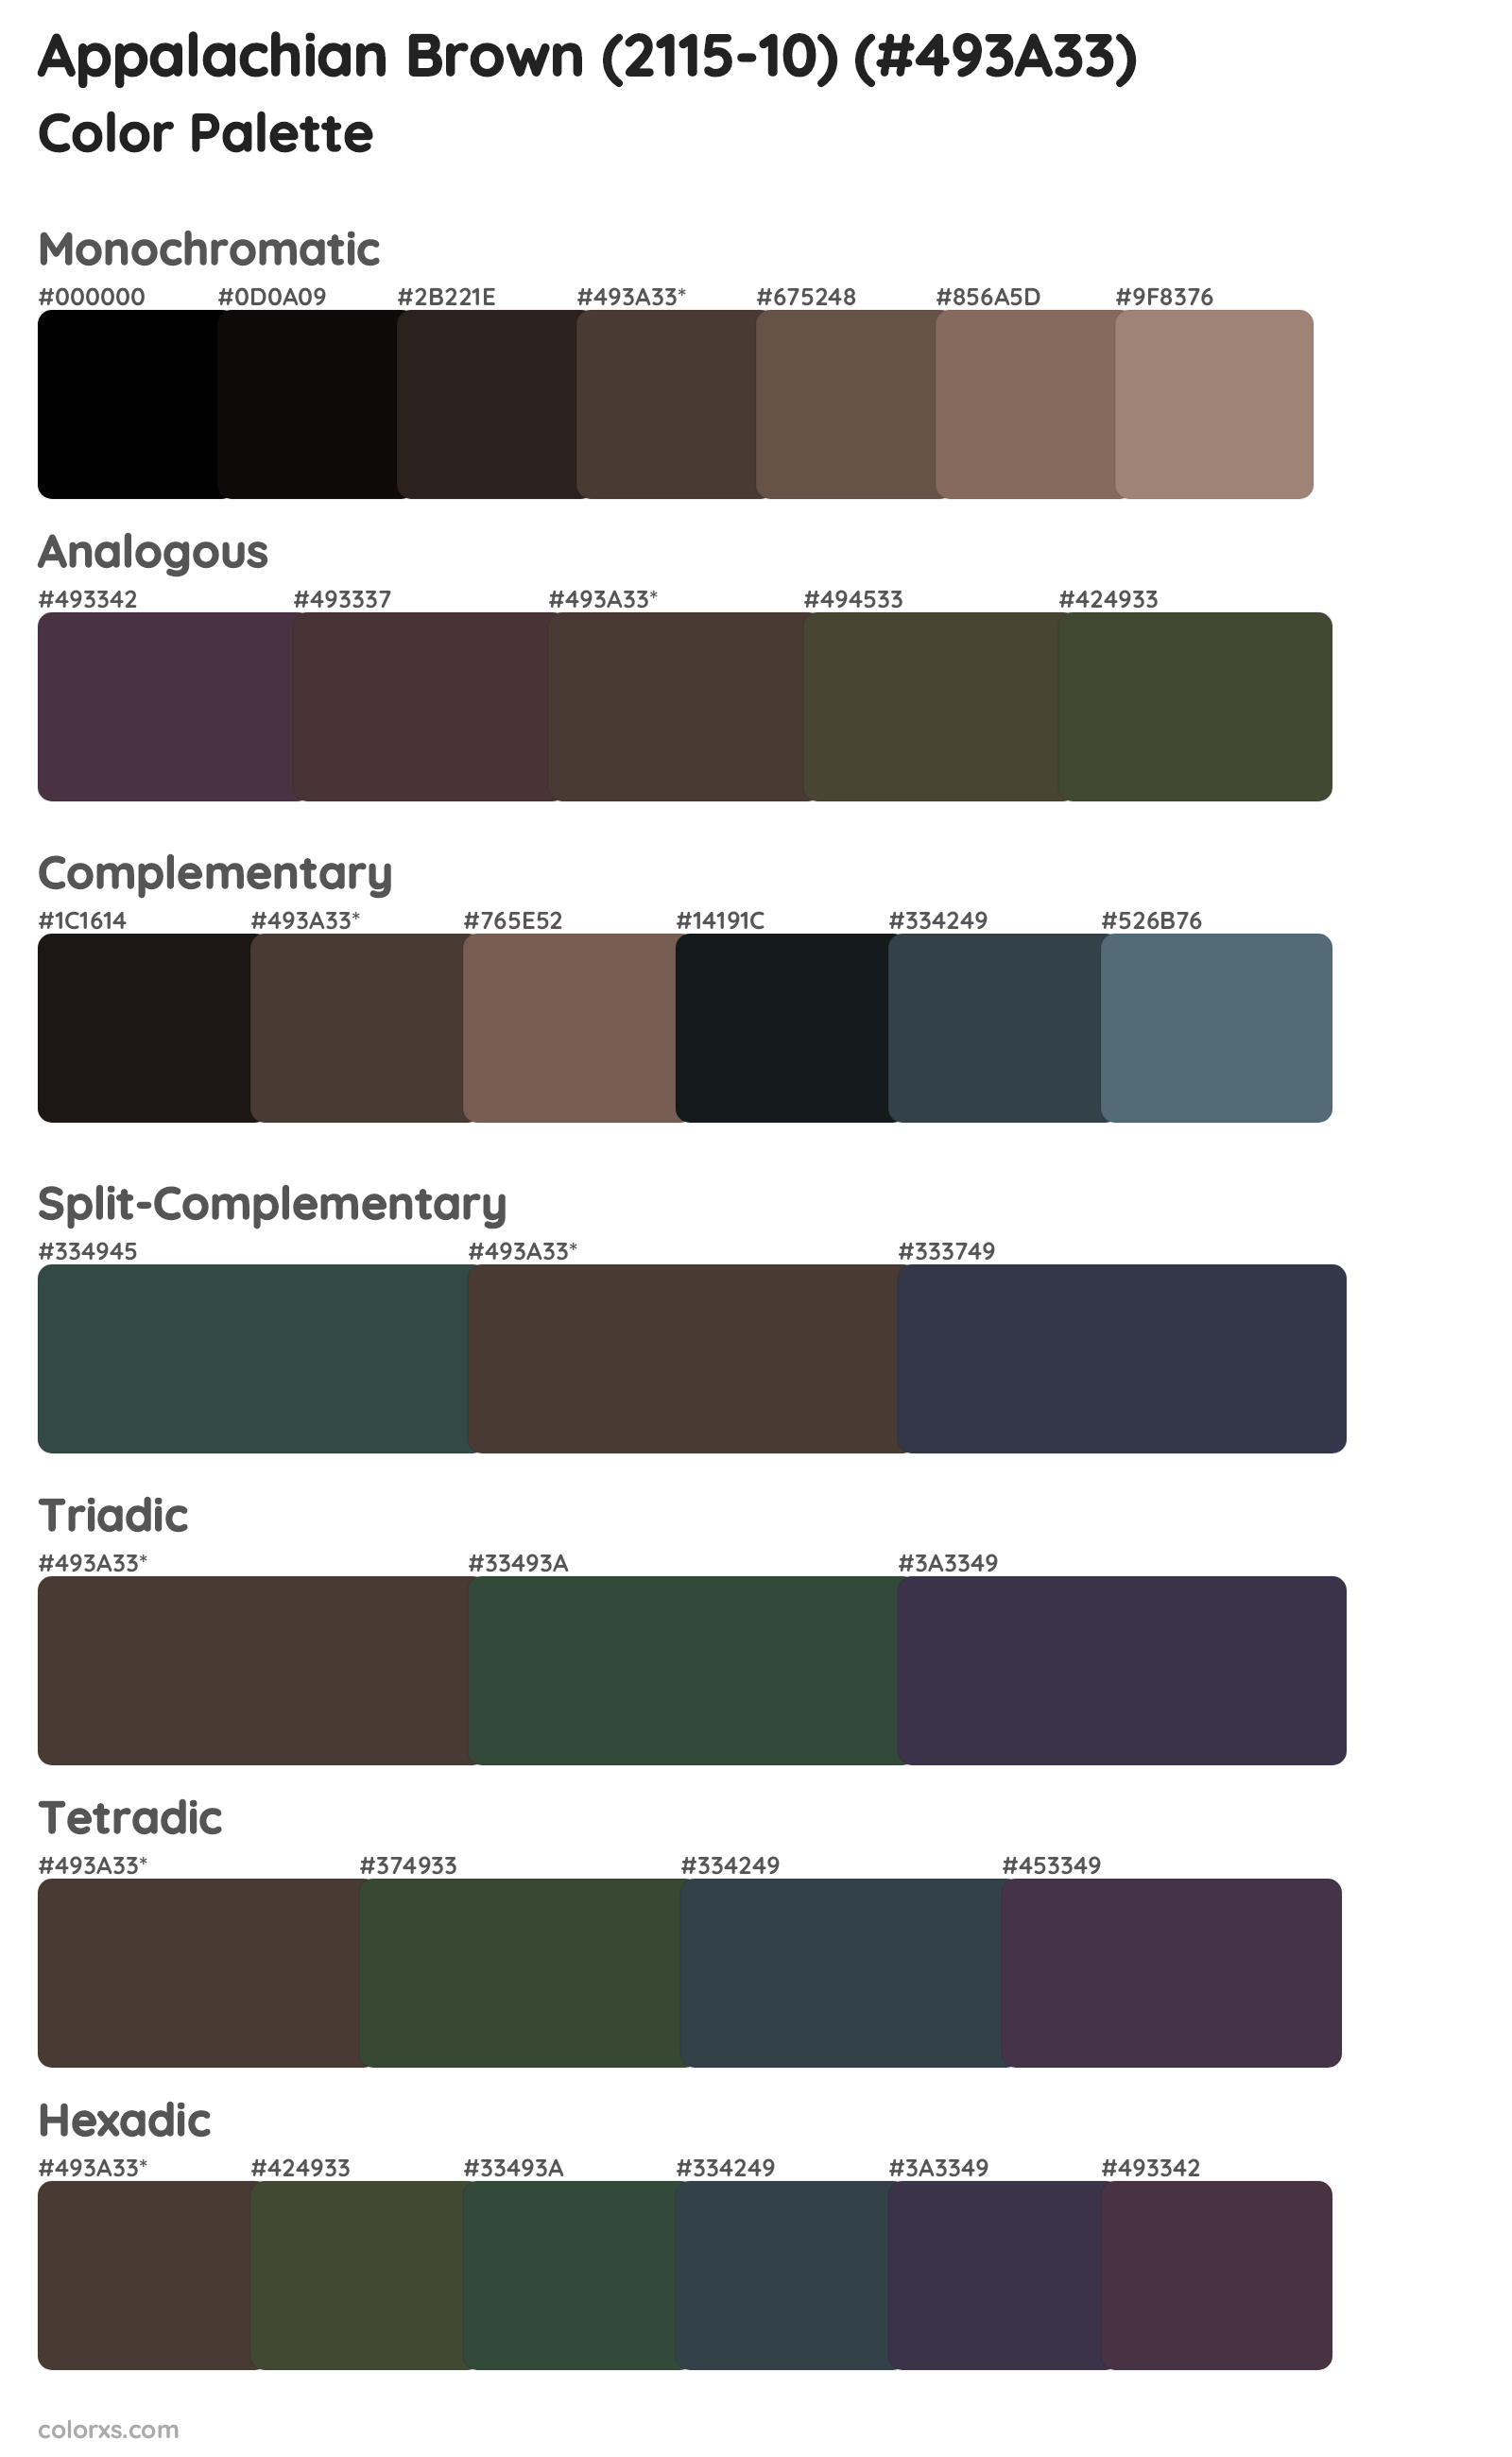 Appalachian Brown (2115-10) Color Scheme Palettes